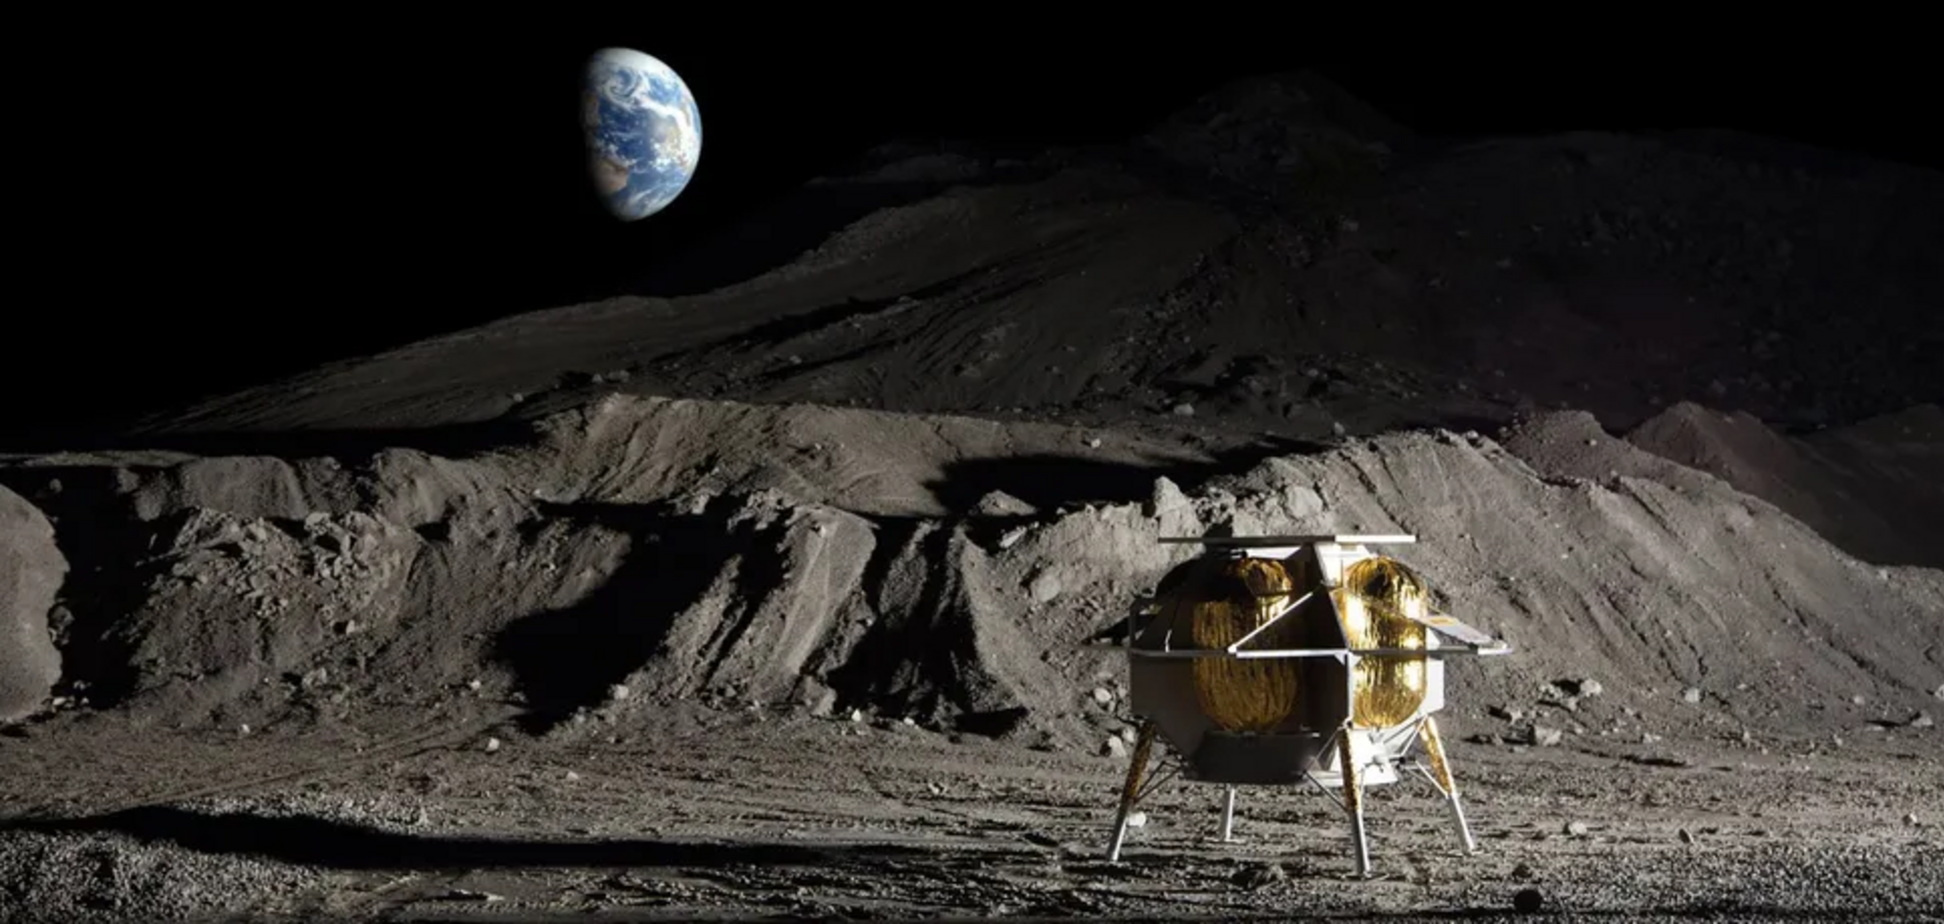 Лунный модуль, который должен был войти в историю, теперь ожидает страшная гибель: что об этом известно